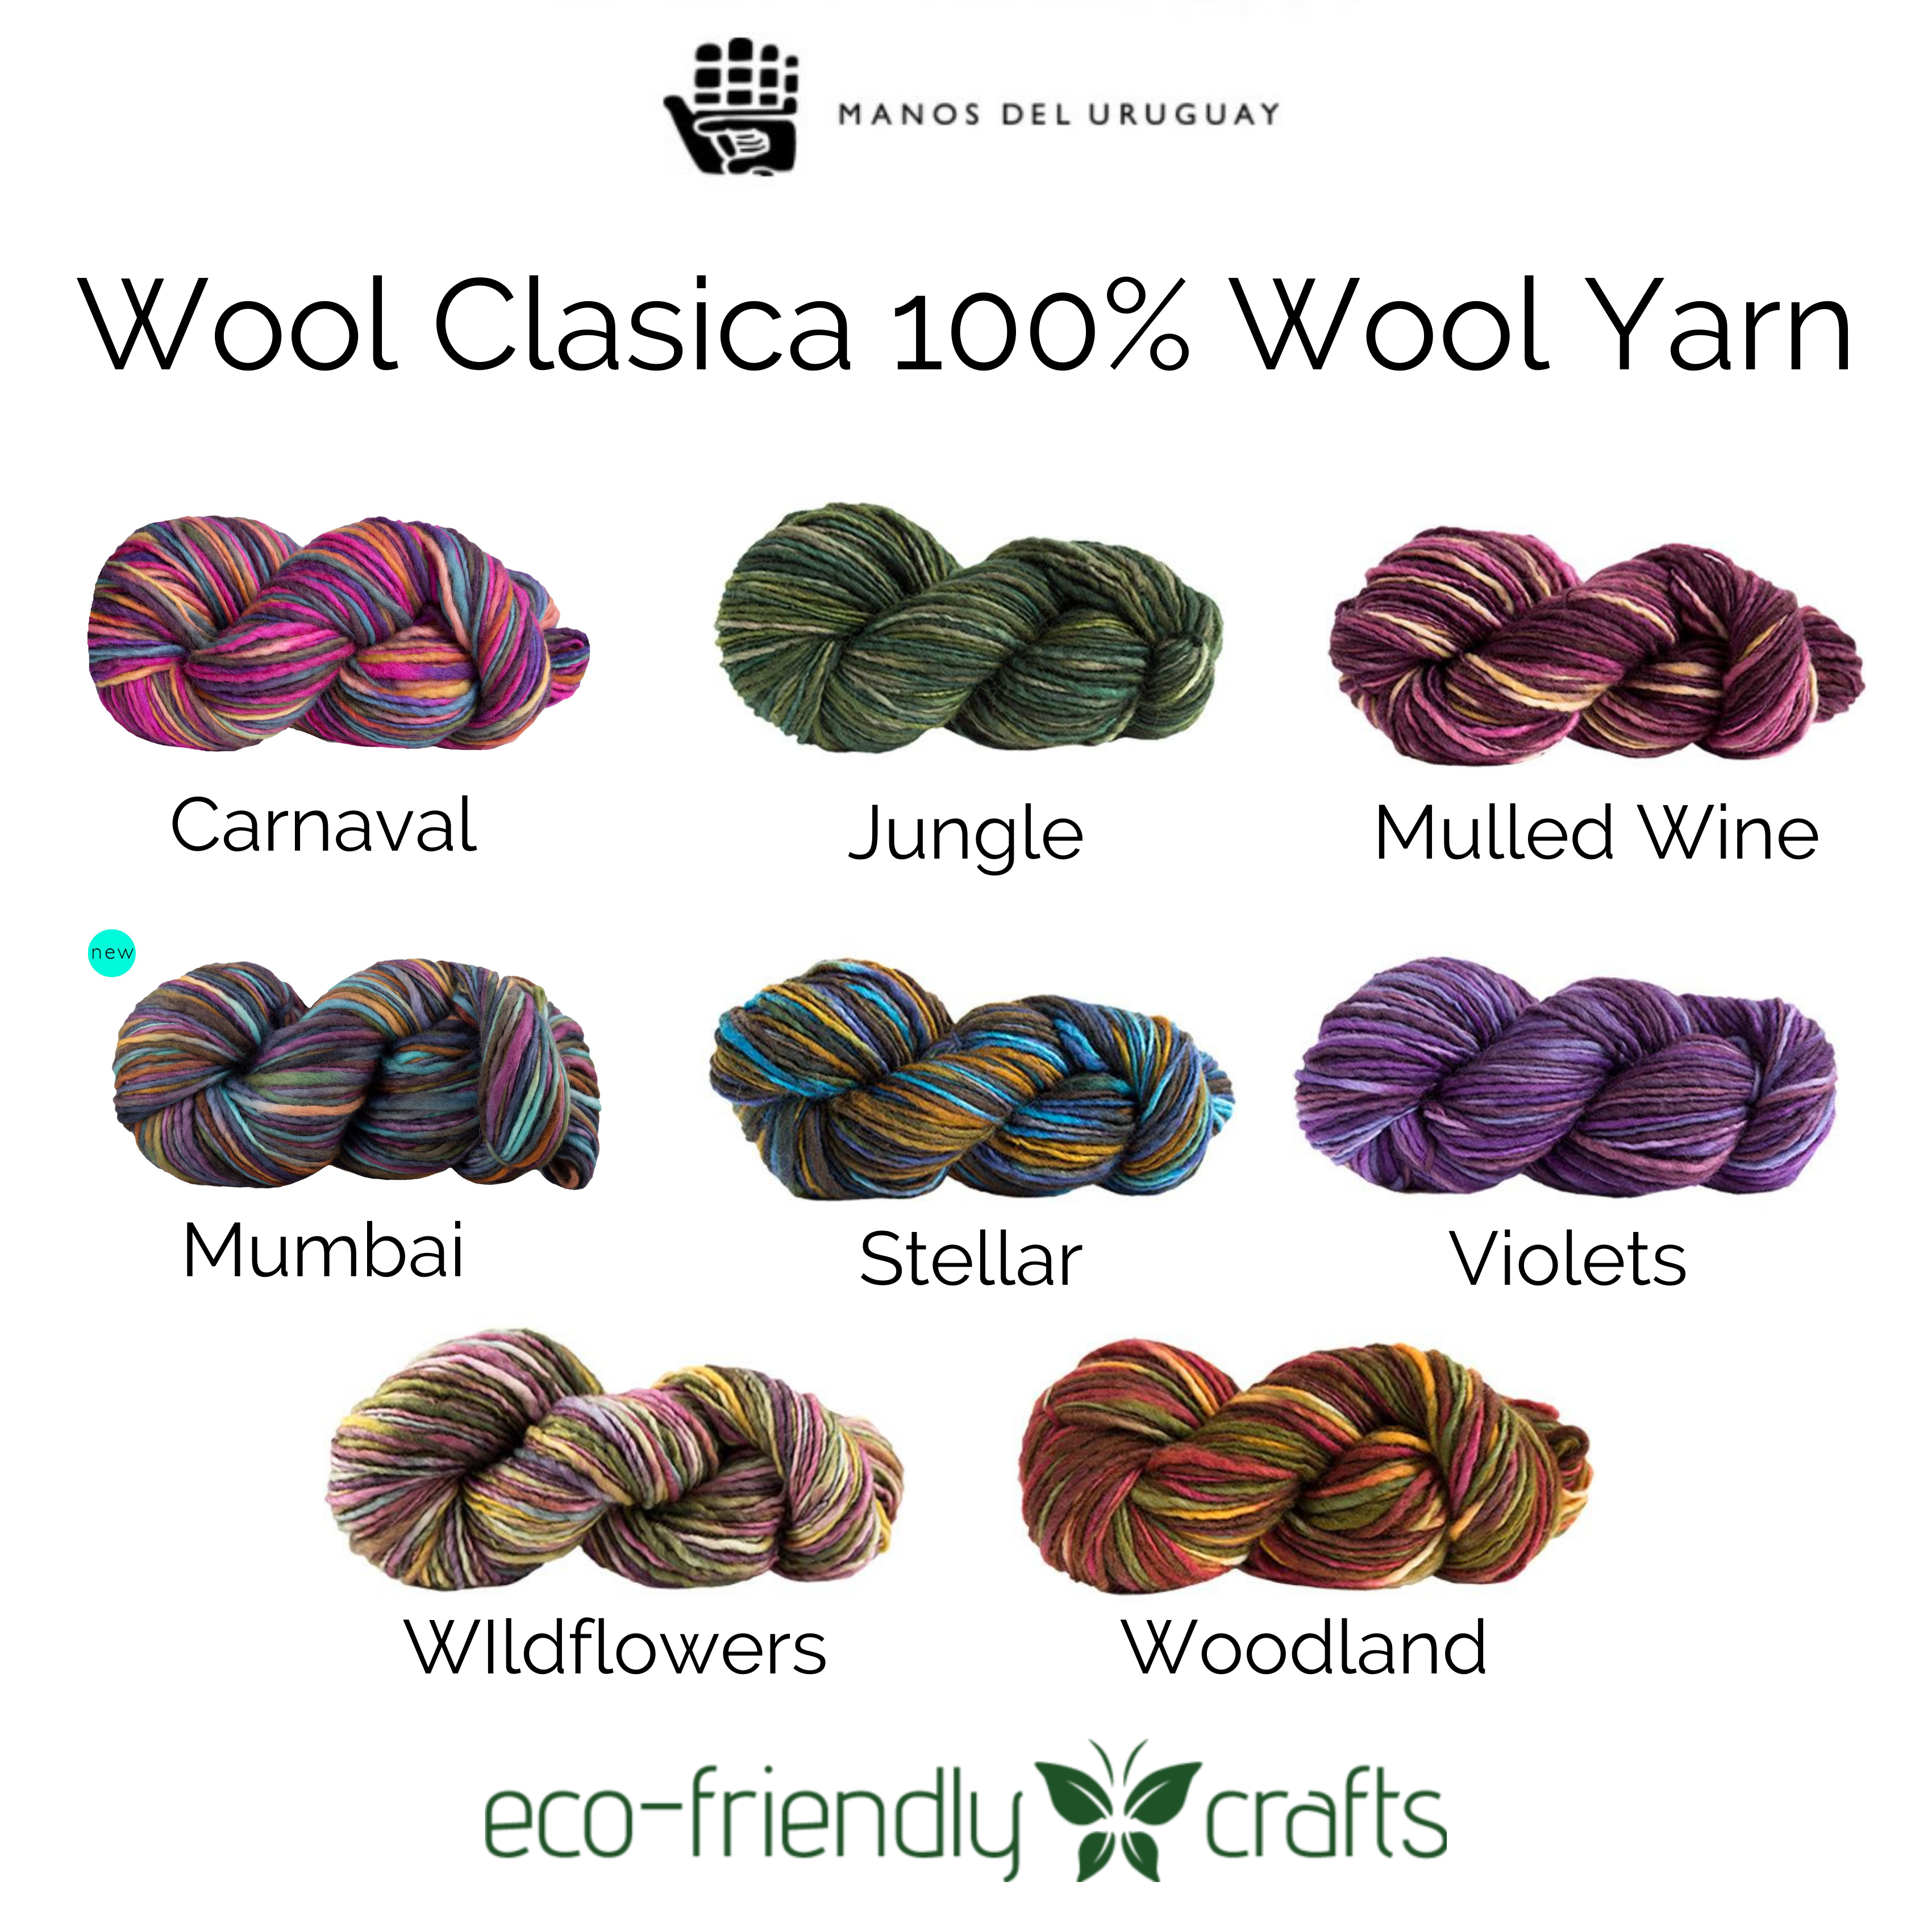 Manos del Uruguay 100% Wool Clasica